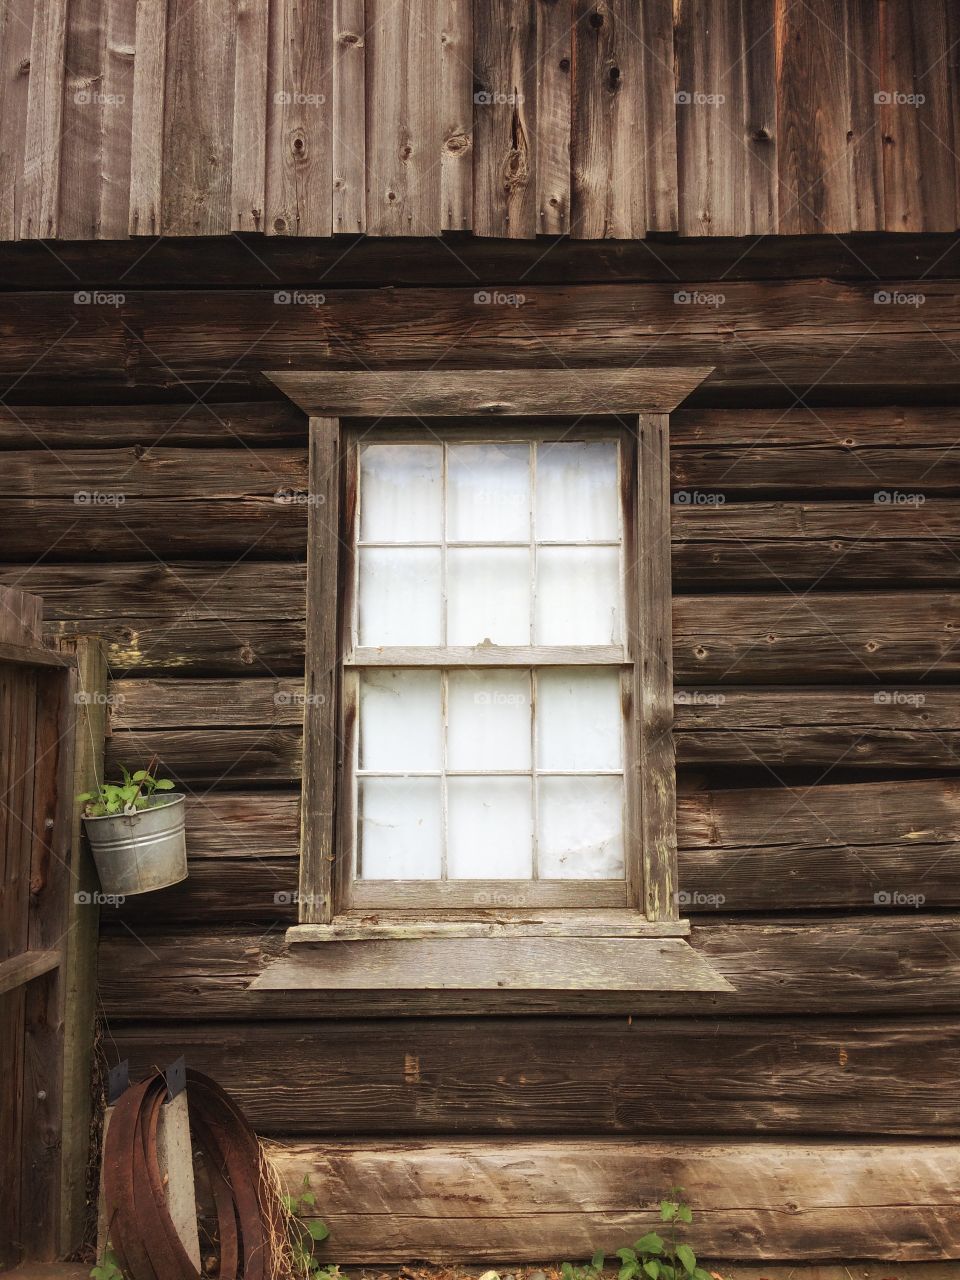 Rustic window circa 1900 